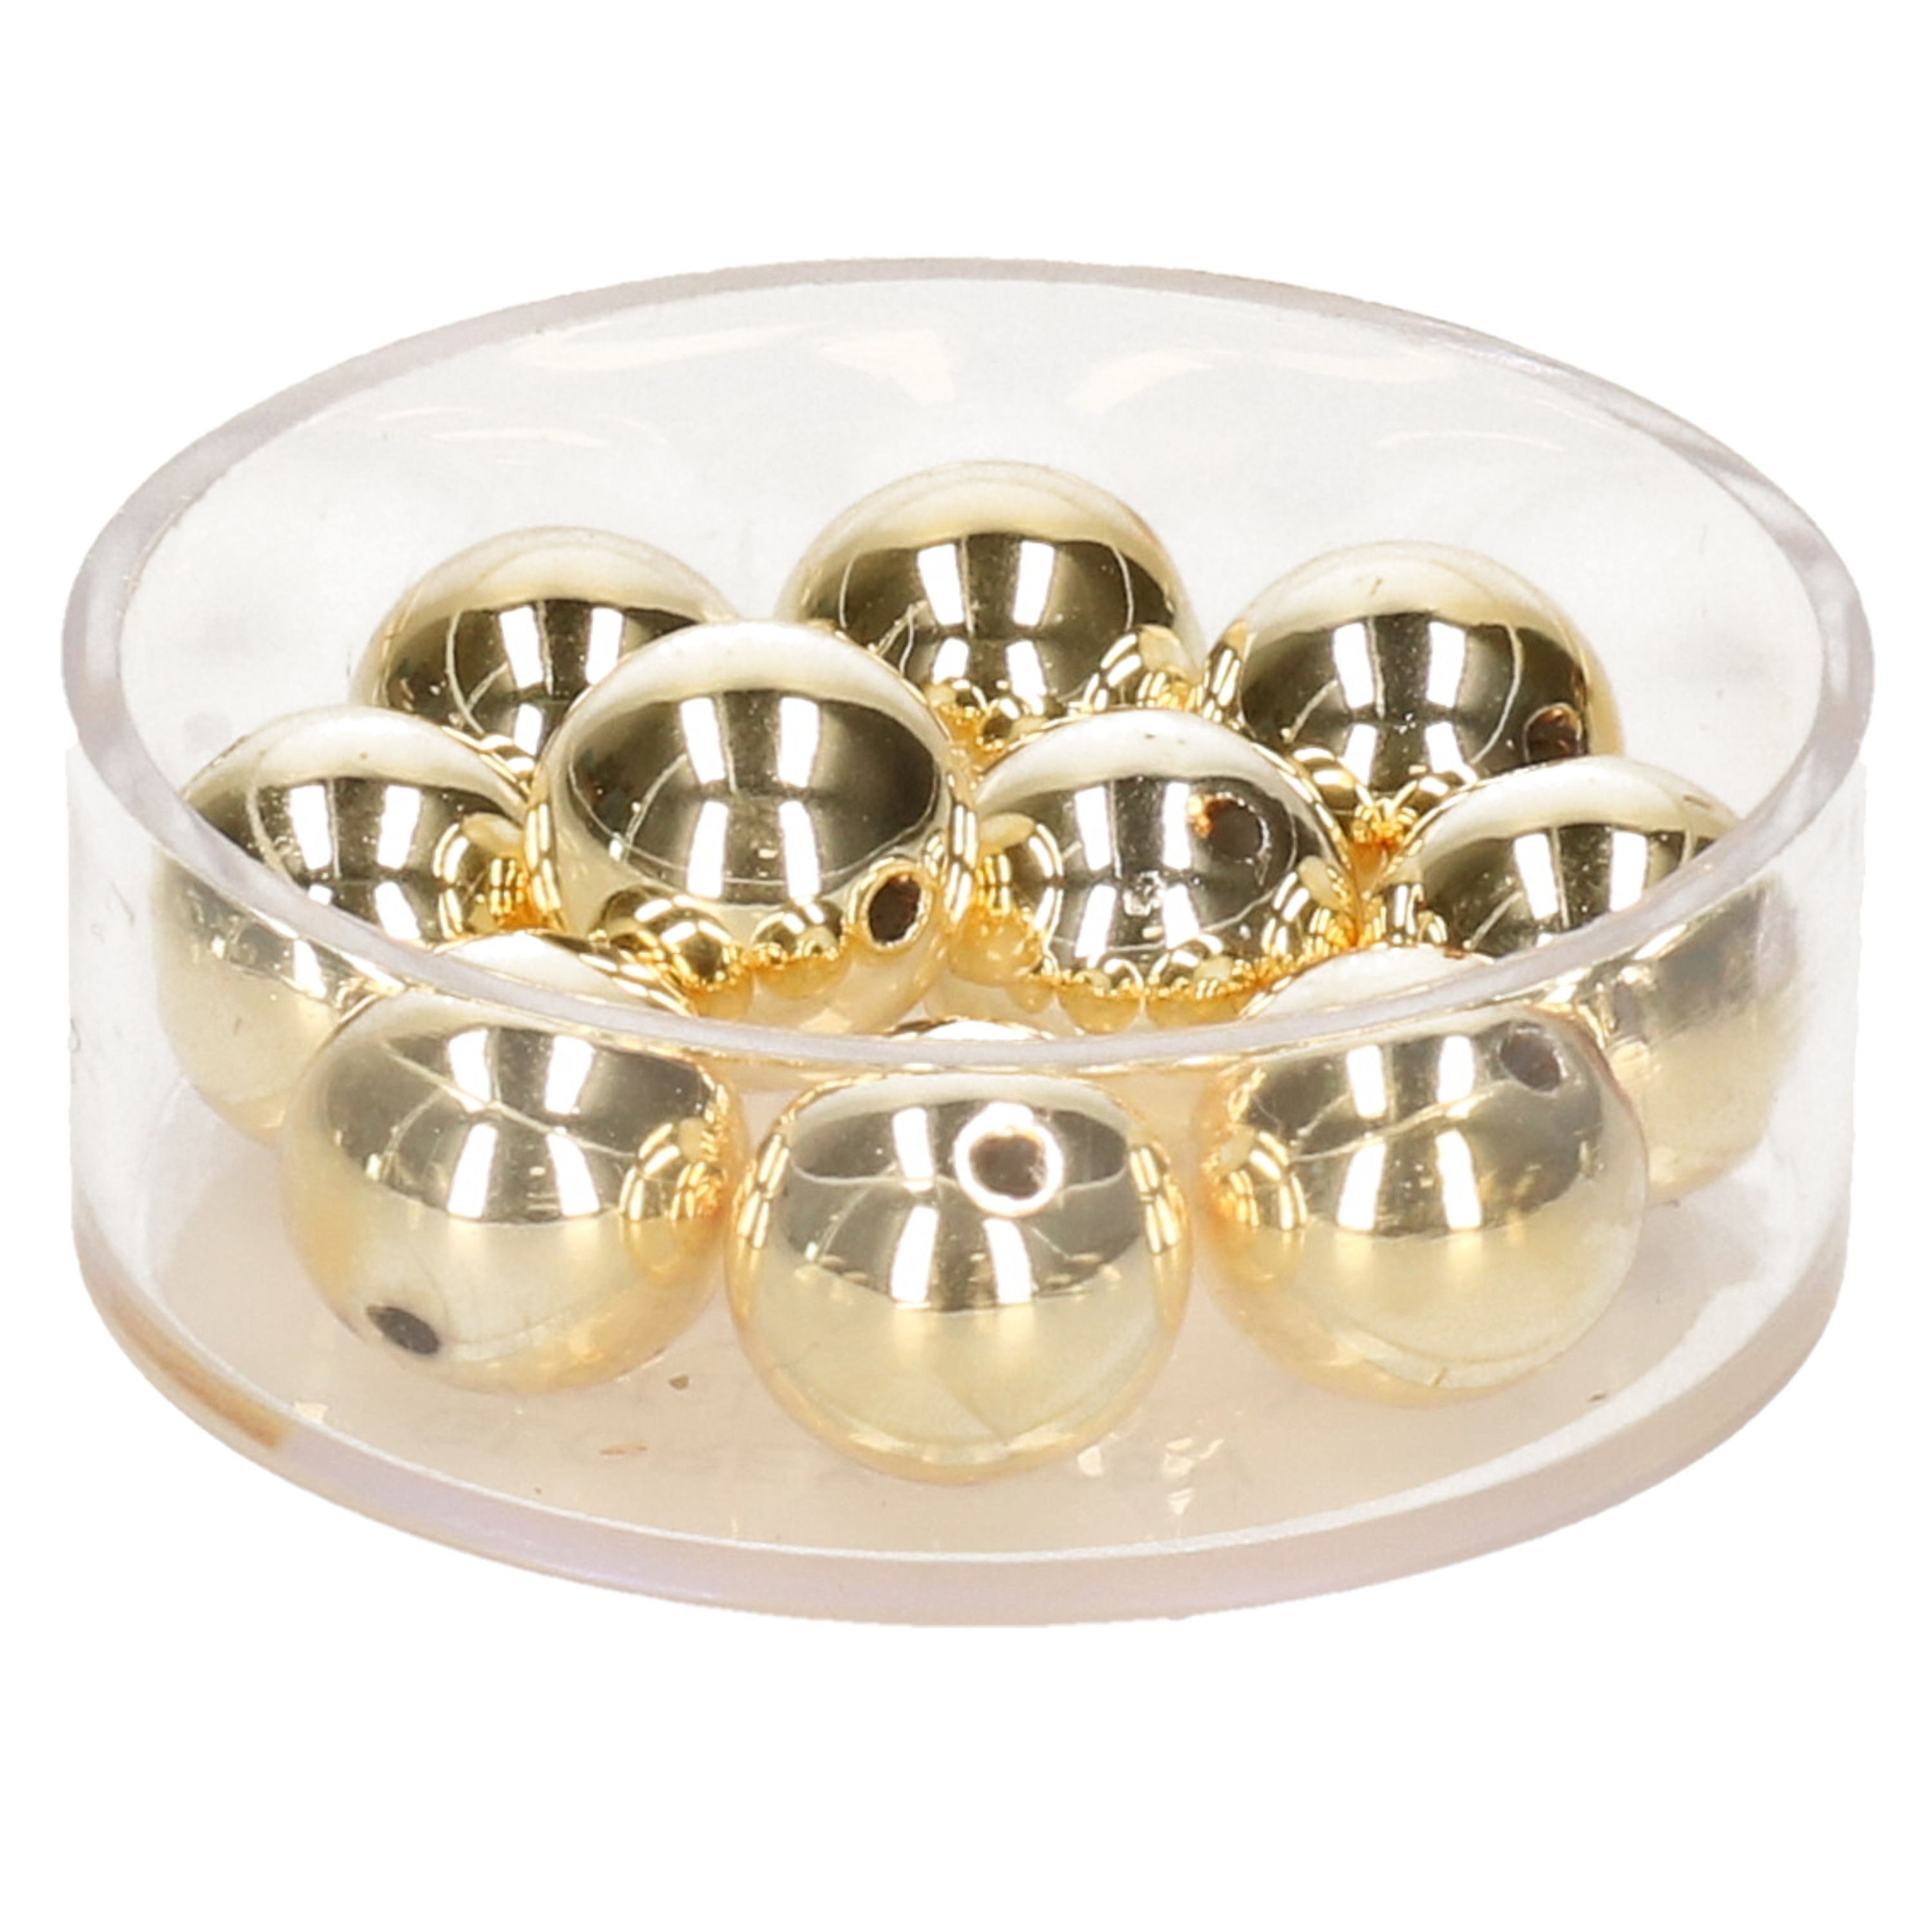 30x stuks metallic sieraden maken kralen in het goud van 6 mm